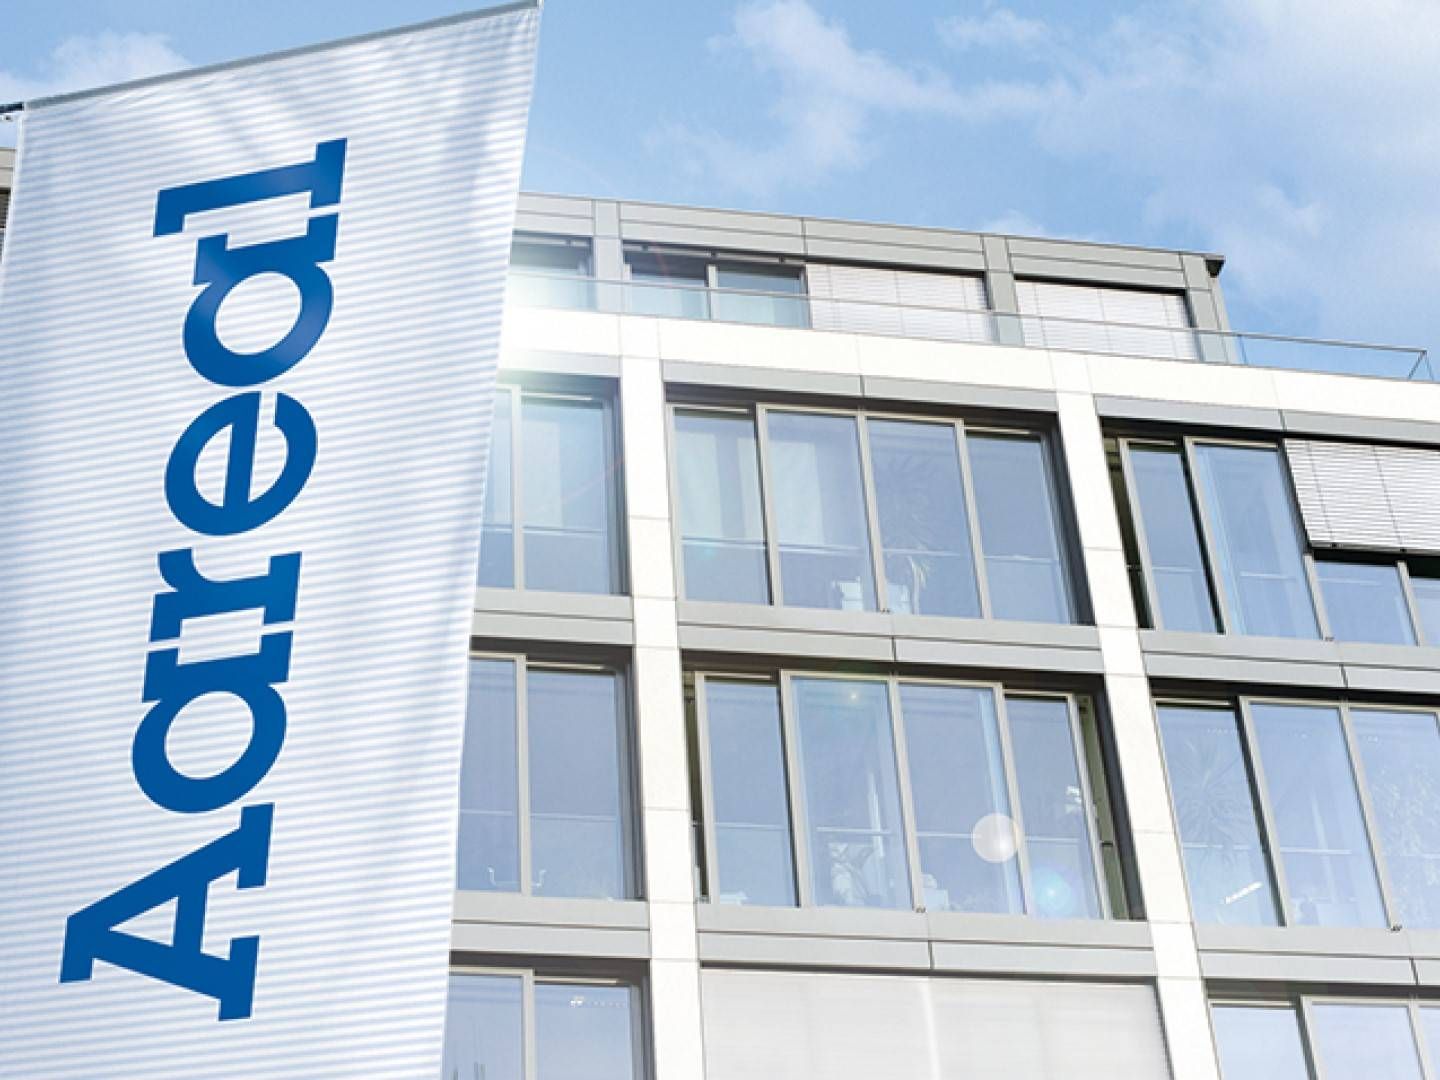 Hauptsitz Aareal Bank in Wiesbaden | Foto: Aareal Bank